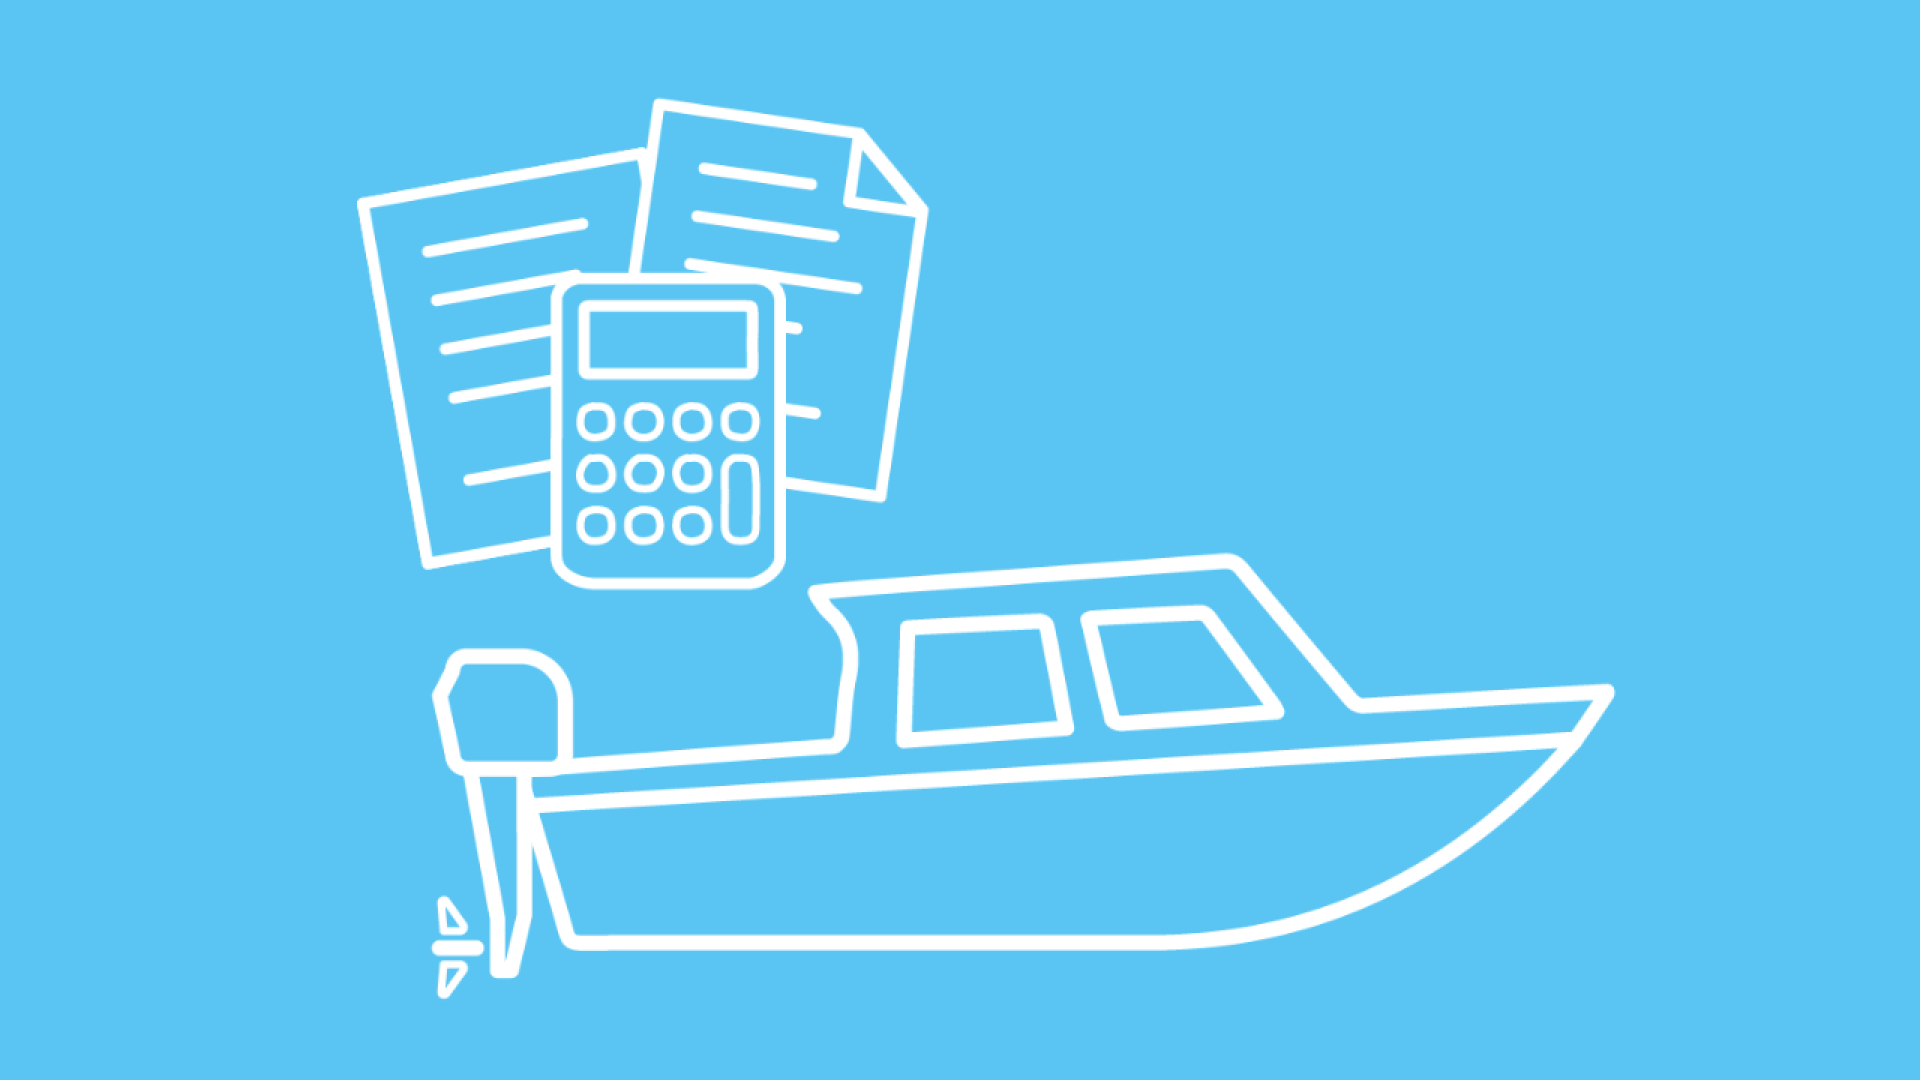 Es ist ein Boot mit Außenborder, Versicherungsdokumente und ein Bootsversicherung Tarifrechner abgebildet